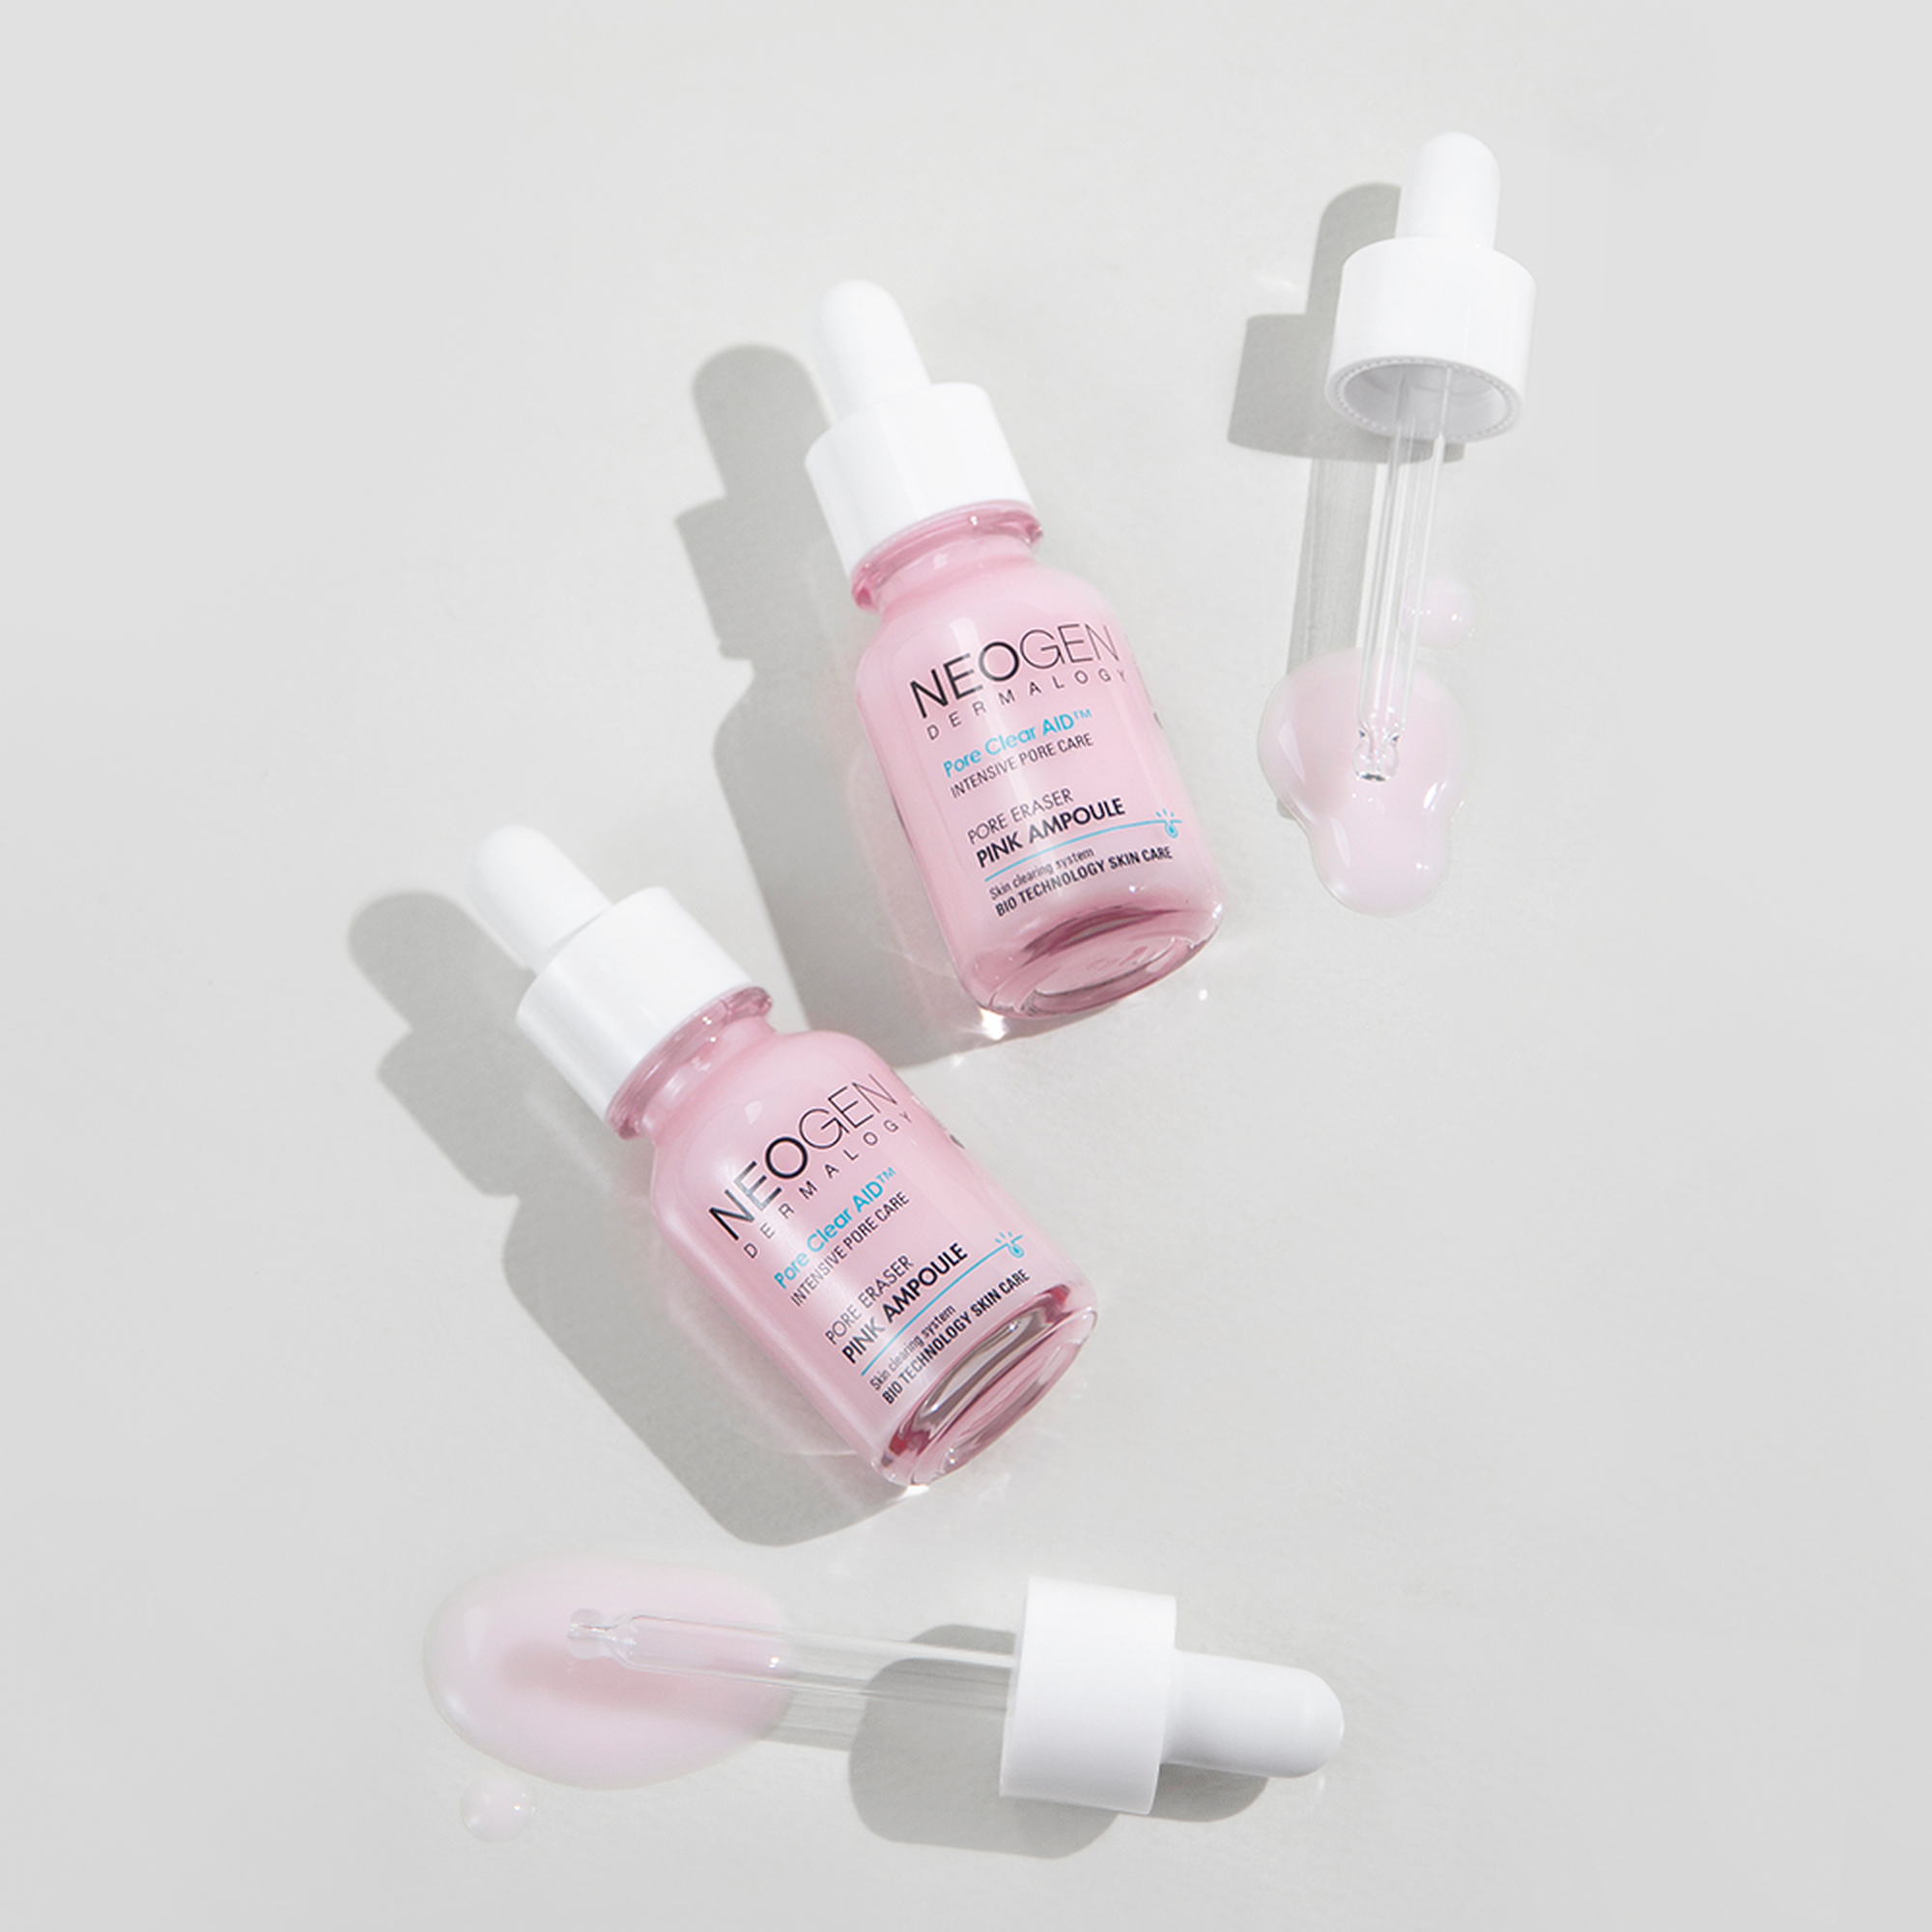 NEOGEN DERMALOGY Pore Eraser Pink Ampoule - 16ml